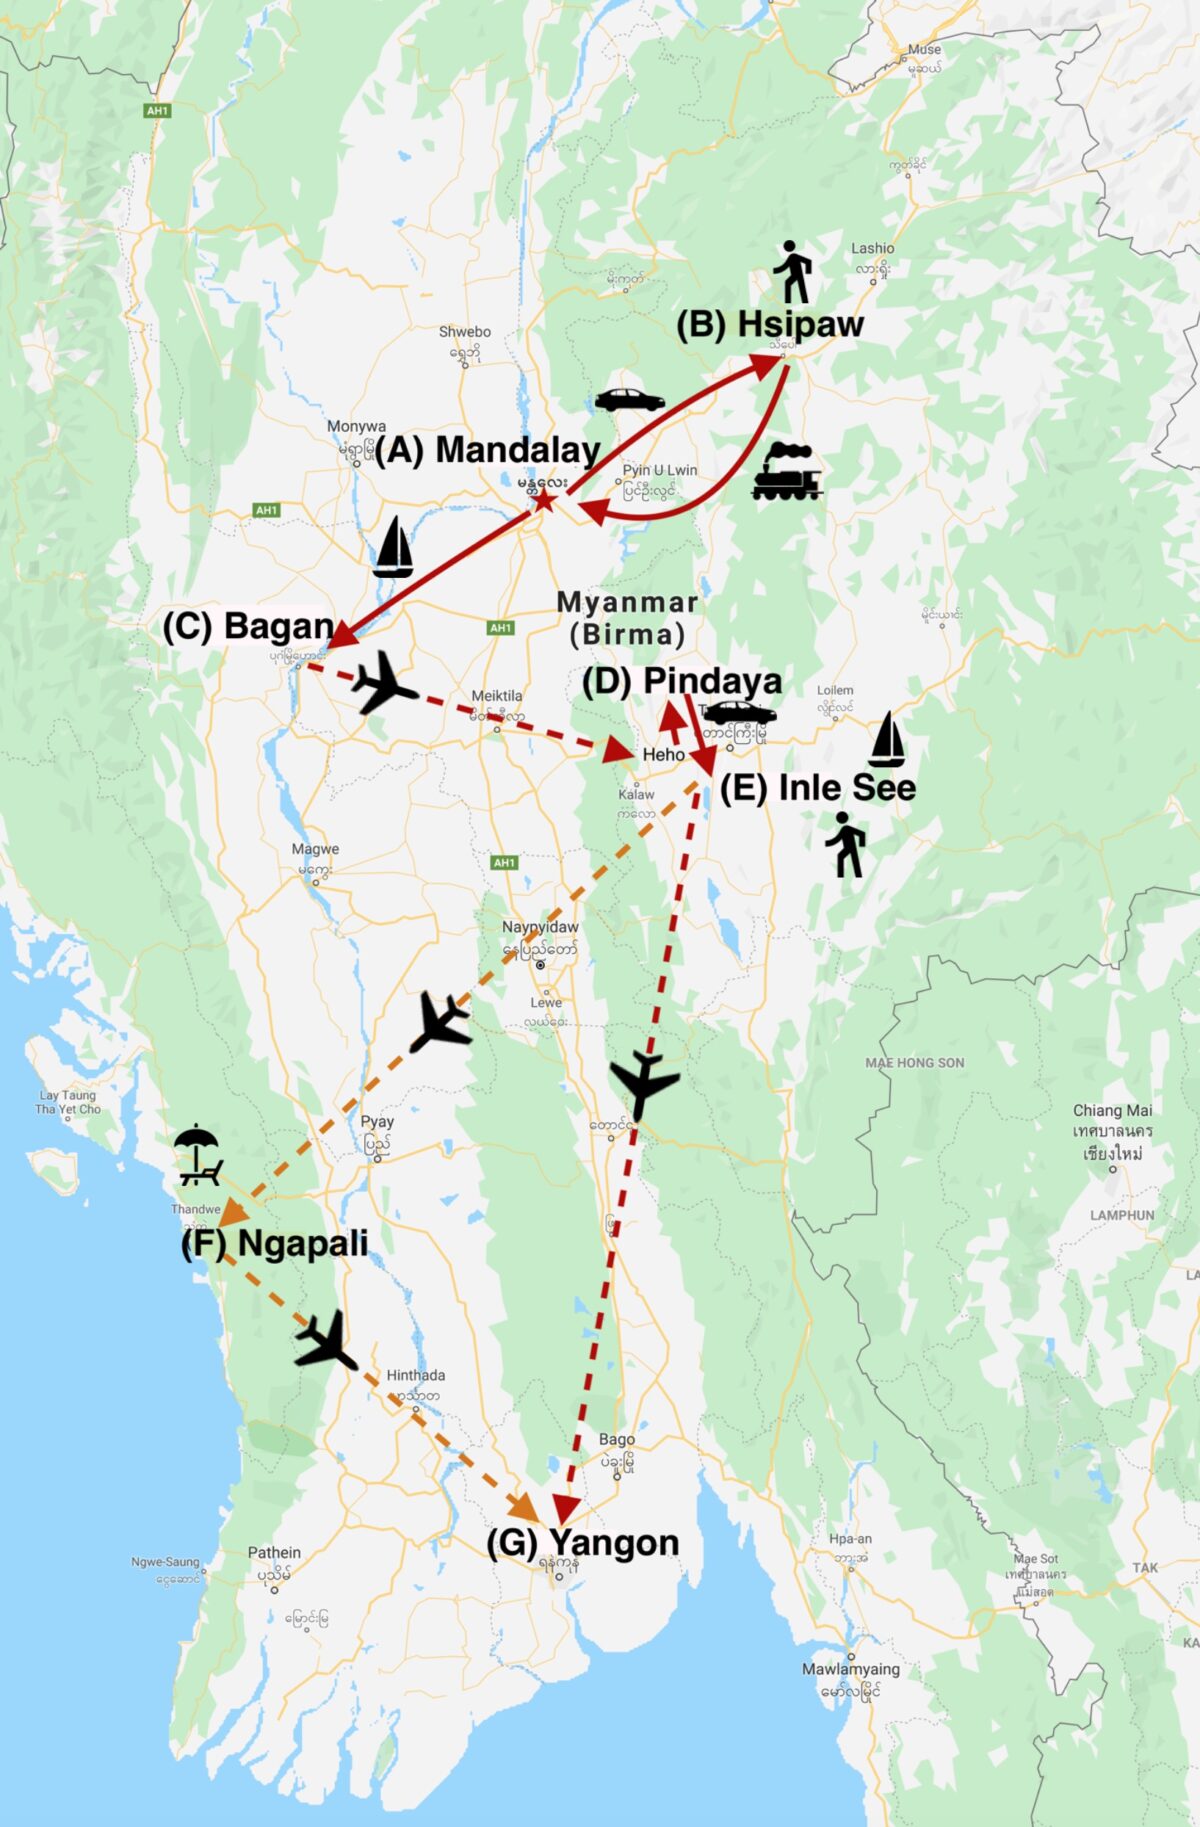 Reise in Myanmar in Asien. Auf einer Karte ist schematisch die Route der Kleingruppenreise dargestellt. Die Route deckt Mandalay, Hsipaw, Bagan, Pindaya, Inle See, Ngapali und Yangon ab.